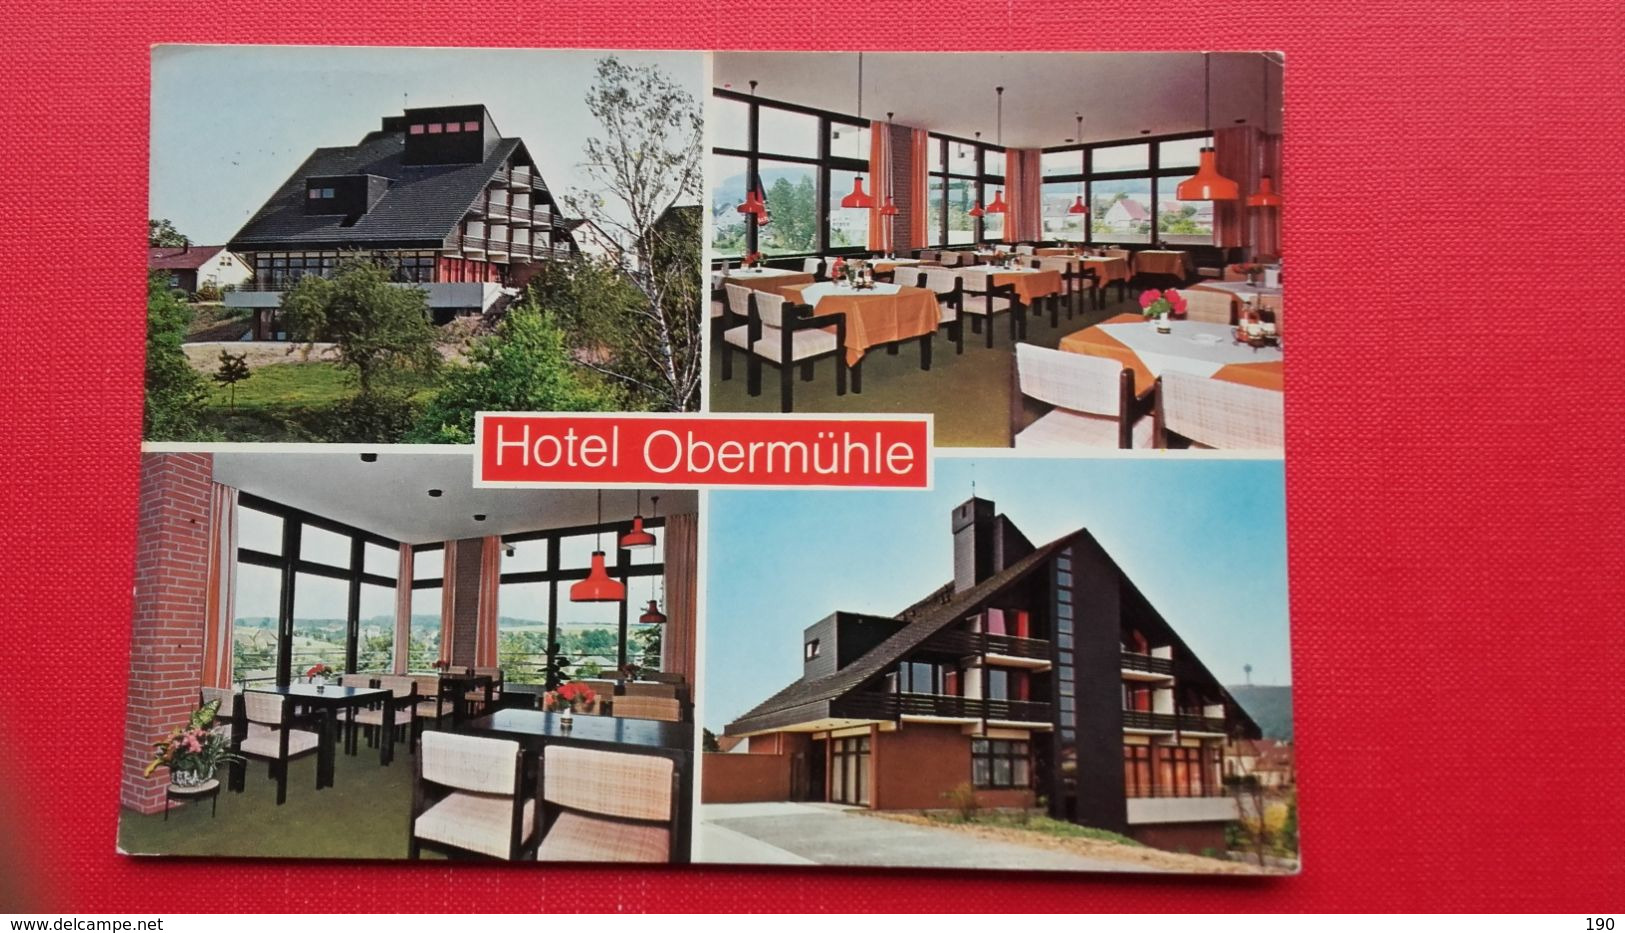 Hotel Obermuhle.Hoxter - Hoexter